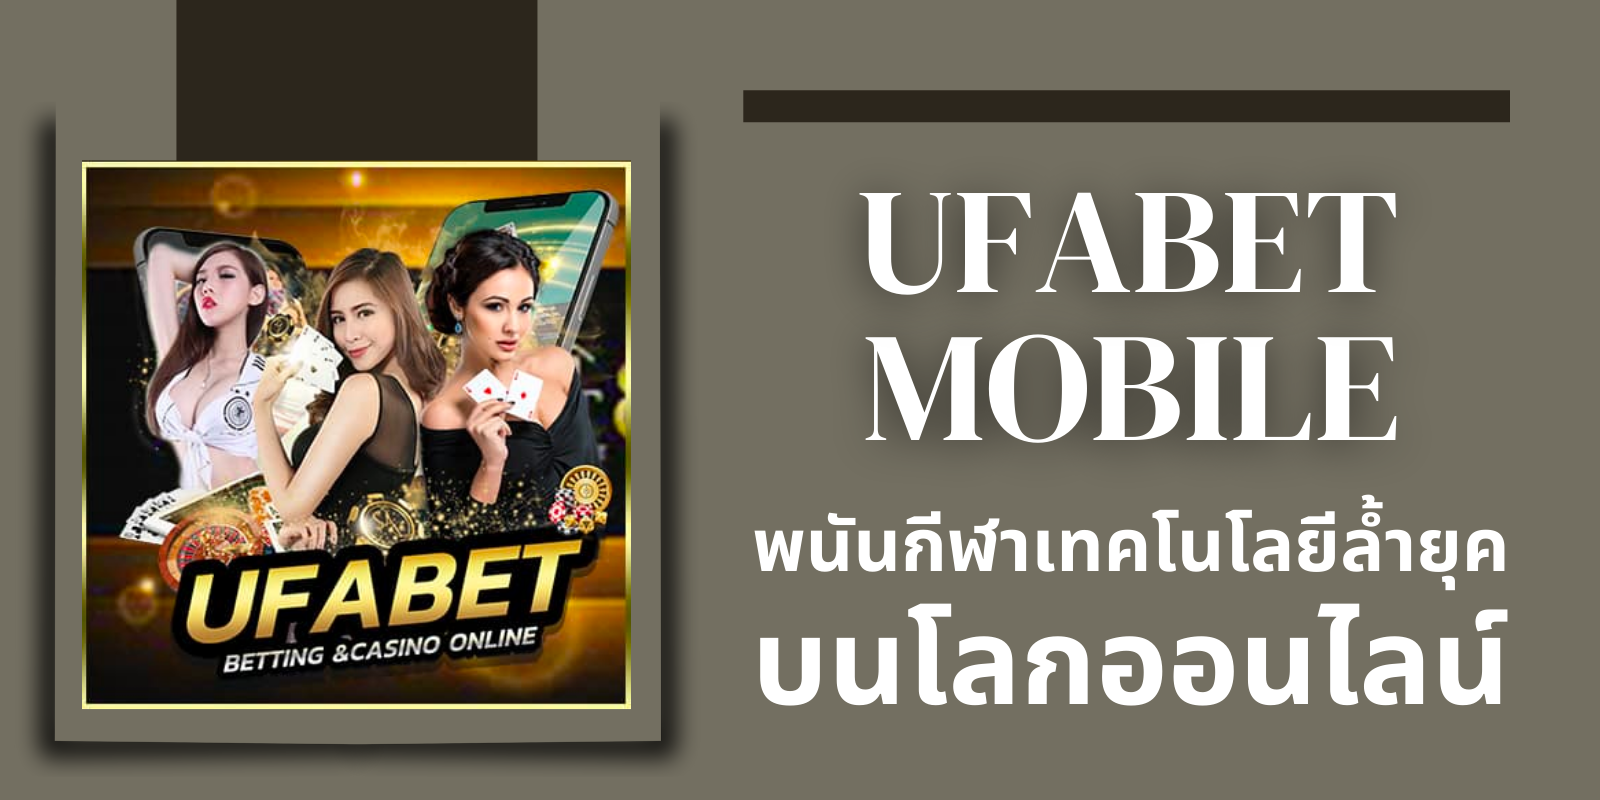 ufabet mobile พนันกีฬาด้วยเทคโนโลยีล้ำยุค บนโลกออนไลน์